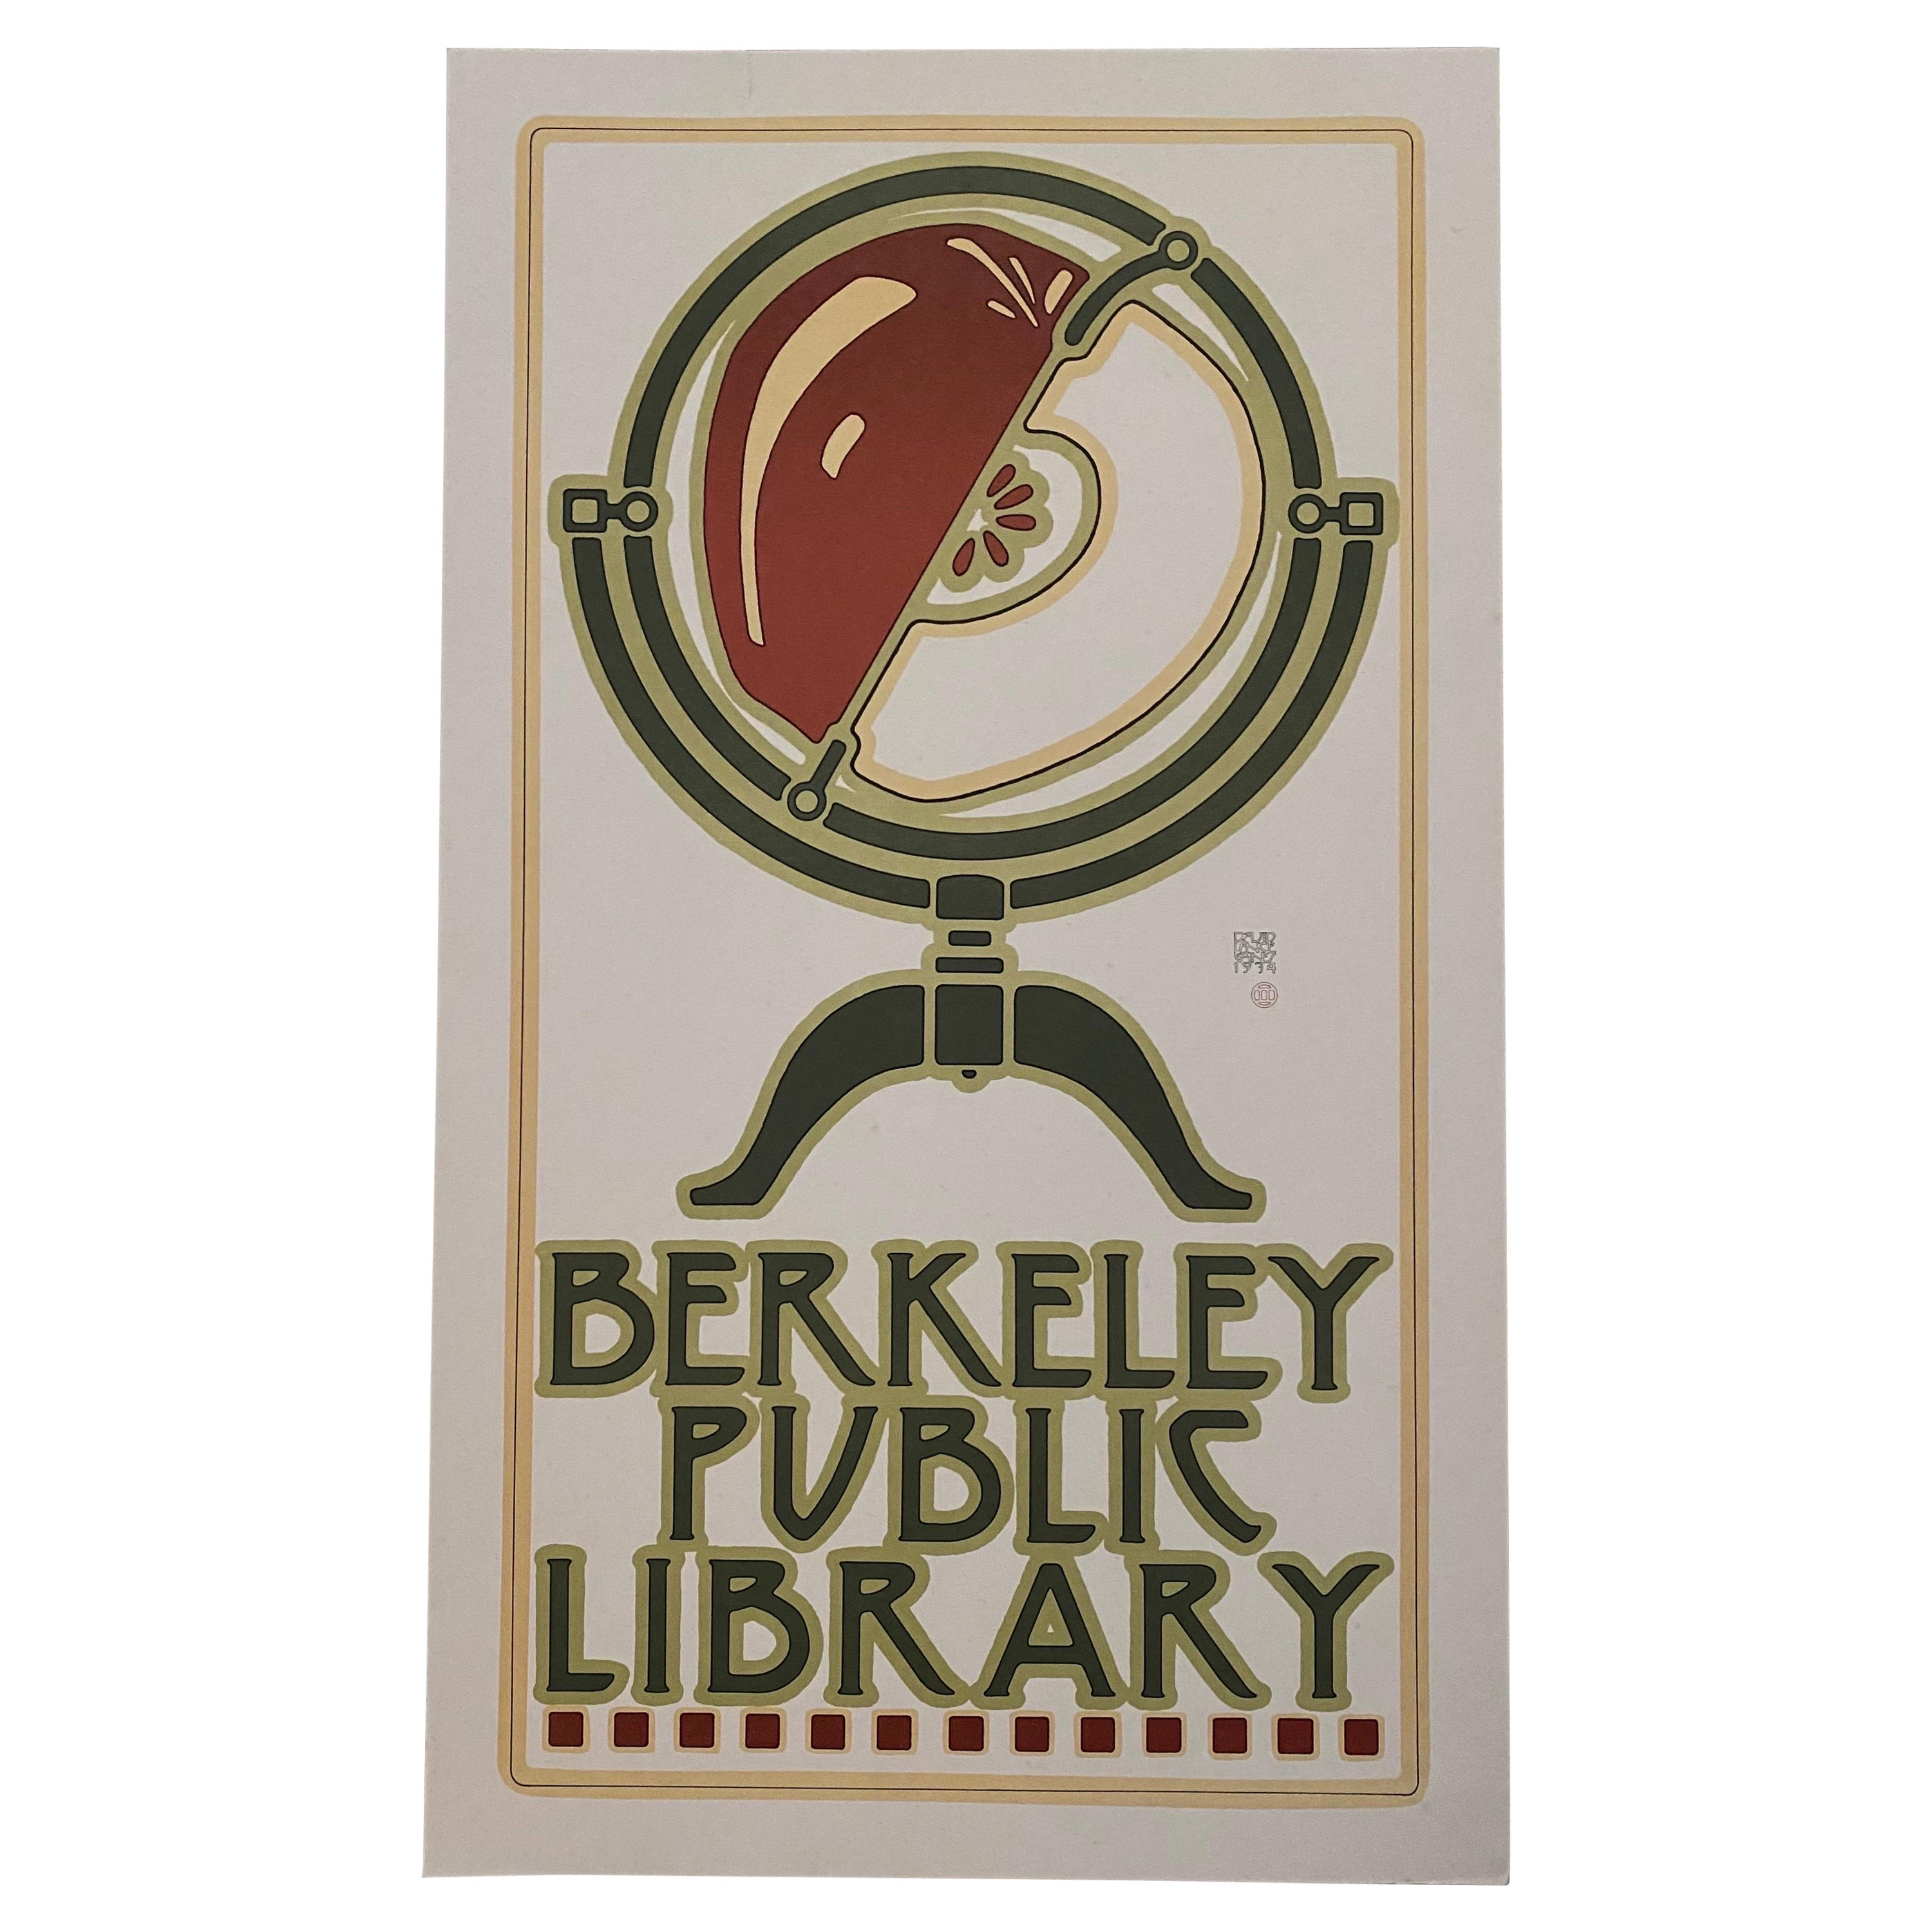 Lithographie de la bibliothèque publique de Berkeley de 1974 de David Lance Goines